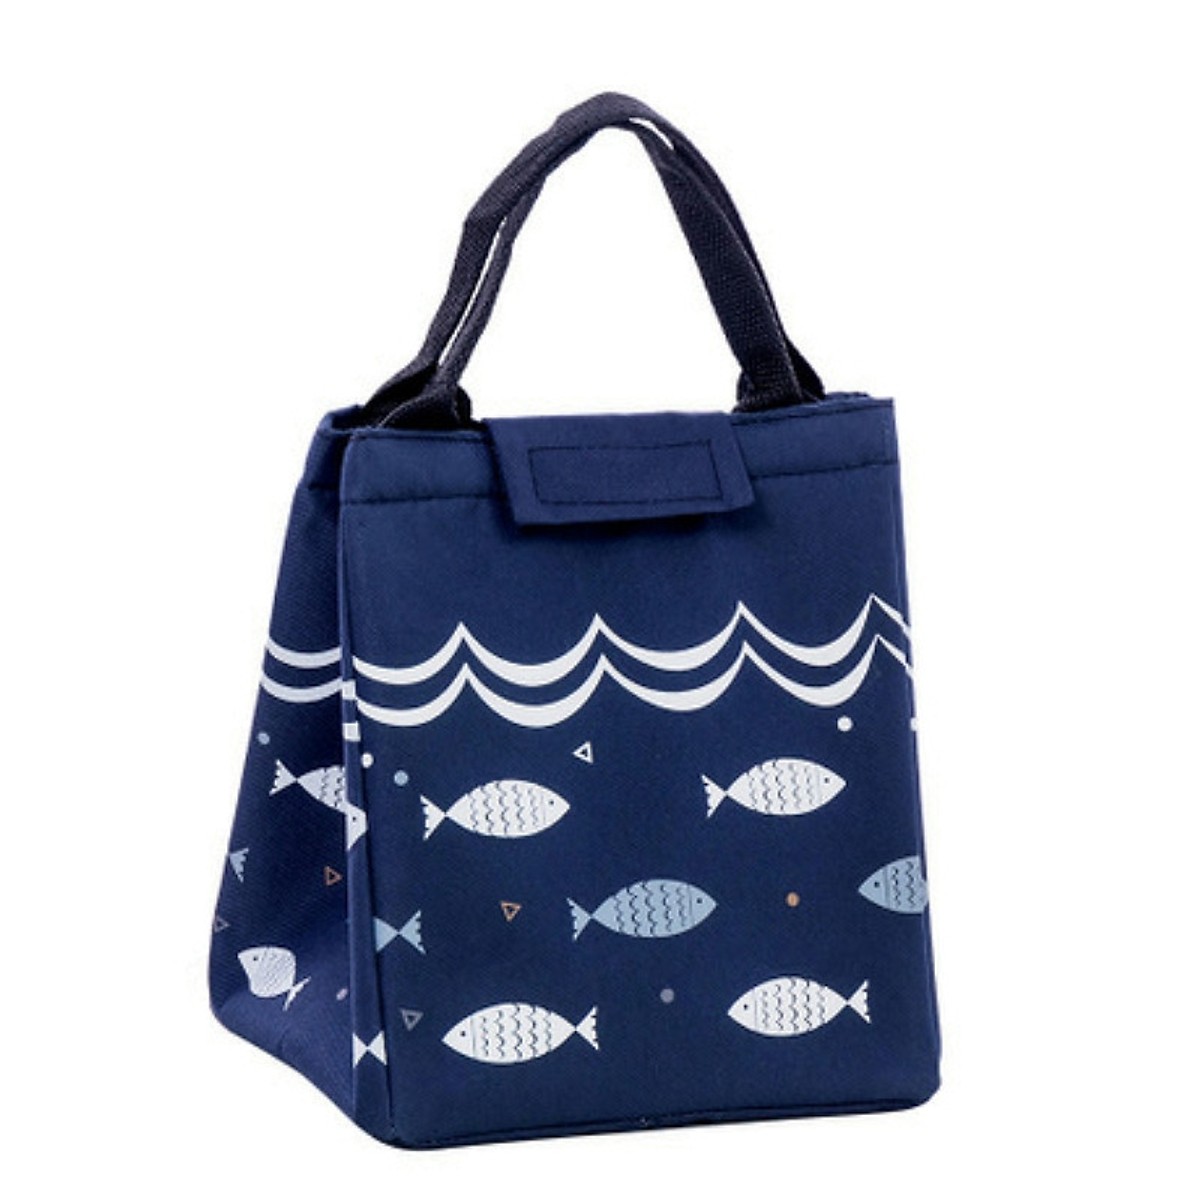 Túi đựng cơm giữ nhiệt vải Oxford hình cá + tặng kèm 01 sổ tay